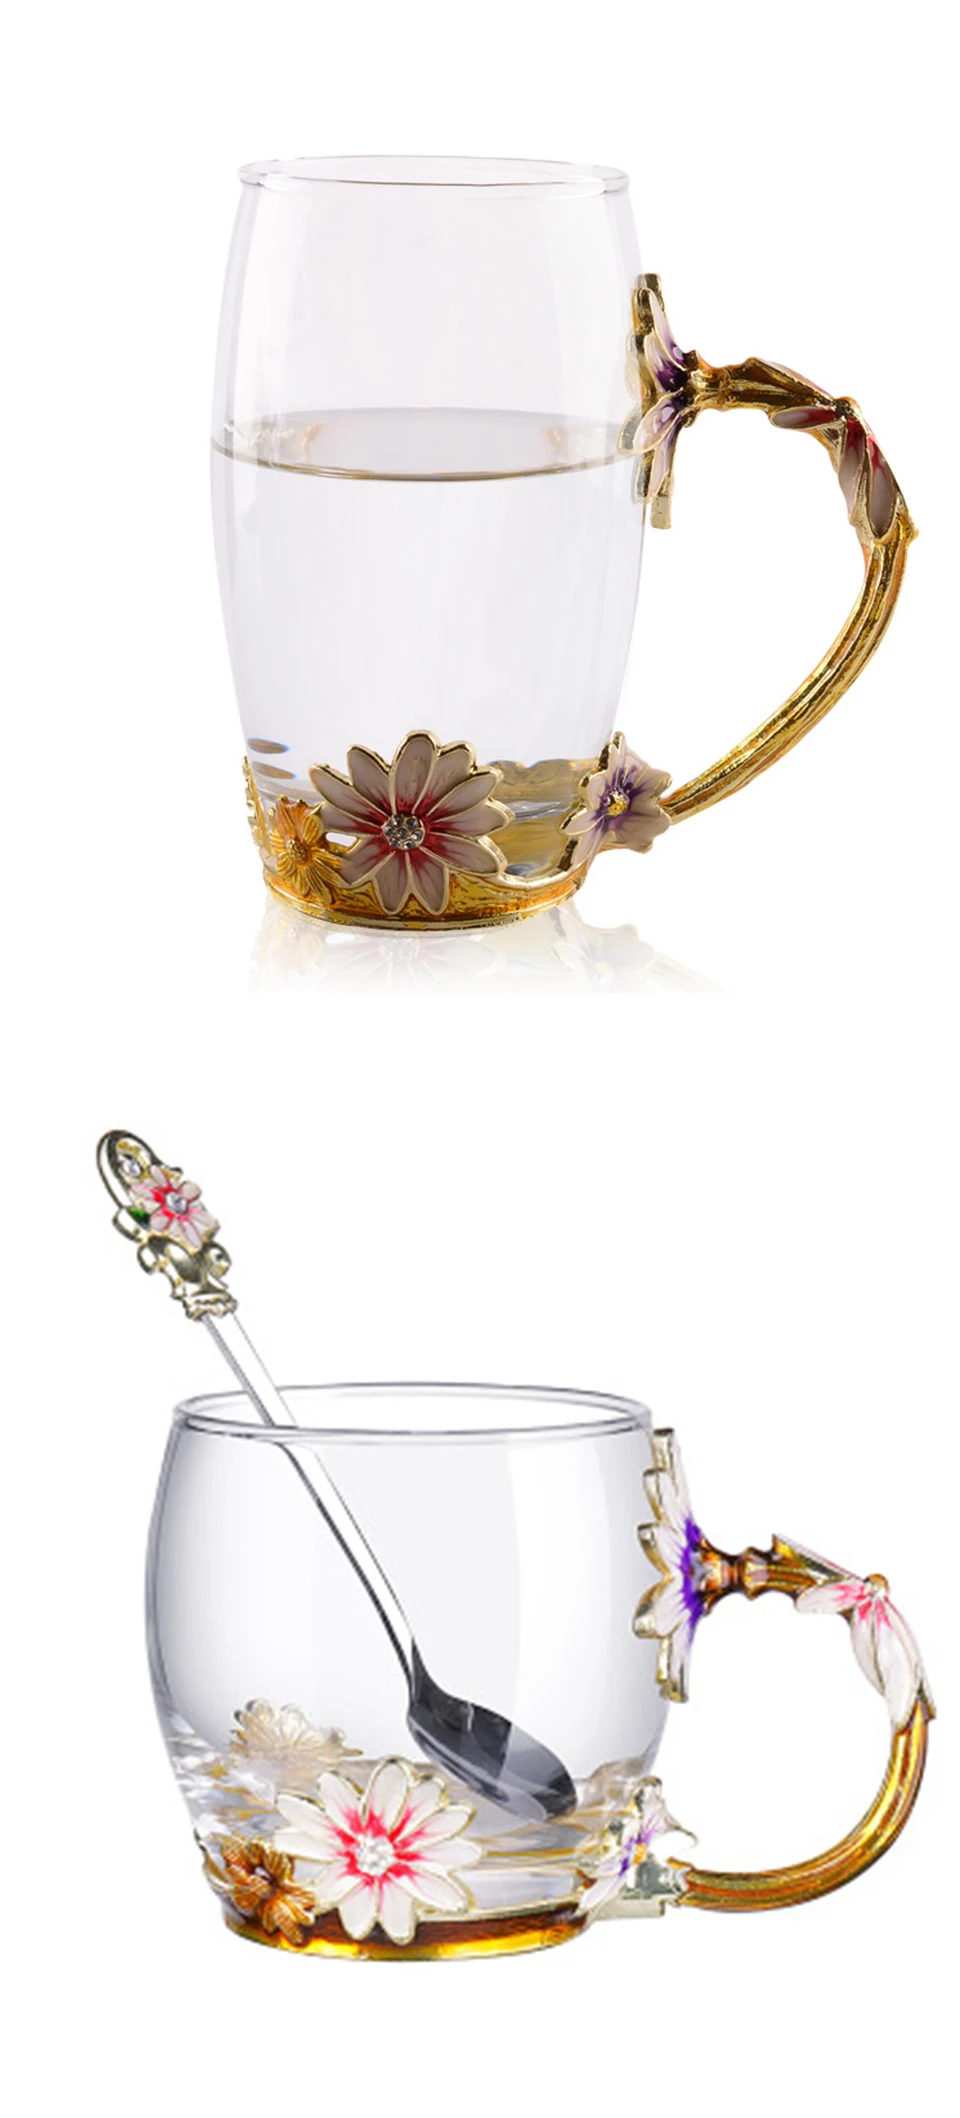 CAKEHOUD цветная эмалированная чашка с металлической ручкой прозрачная стеклянная чашка для чая кофе термоустойчивая чашка офисная Питьевая утварь